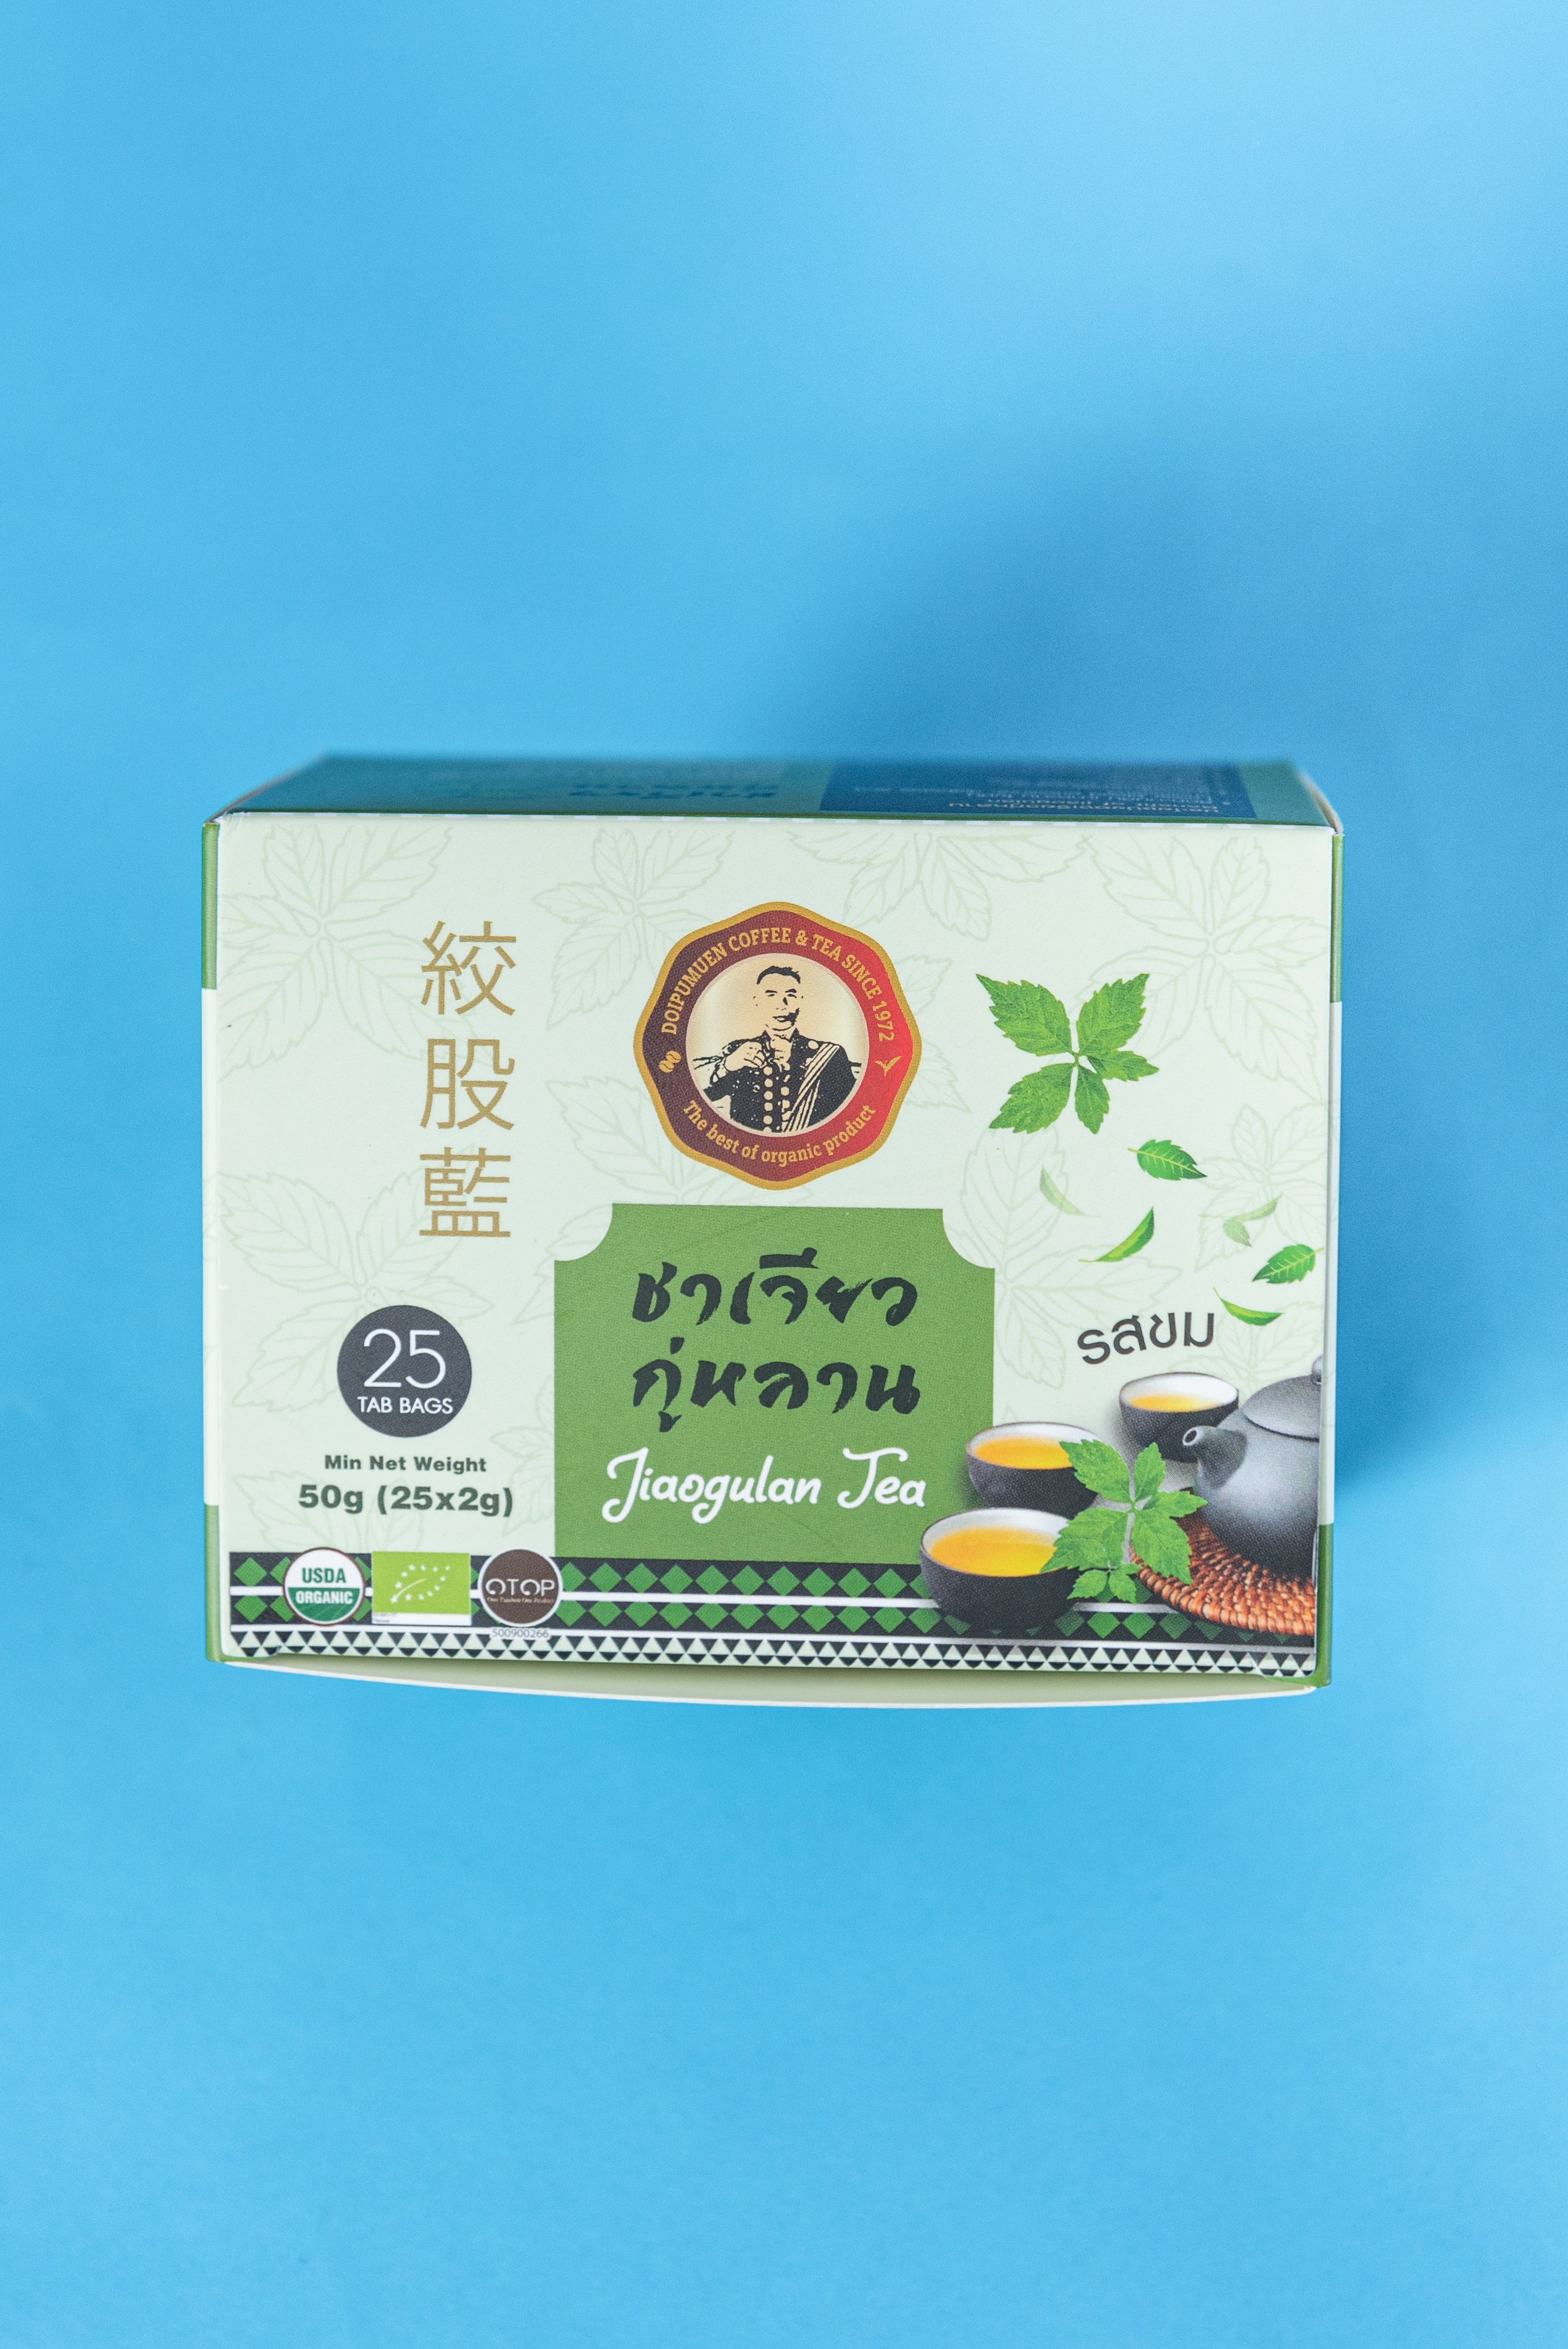 ชาเจียวกู่หลานออร์แกนิค รสขม (ตราดอยปู่หมื่น) บรรจุ 25 ซอง Organic Jiaogulan Herb Tea Bitter Taste (Doi Pumuen Brand) Pack 25 Pcs.